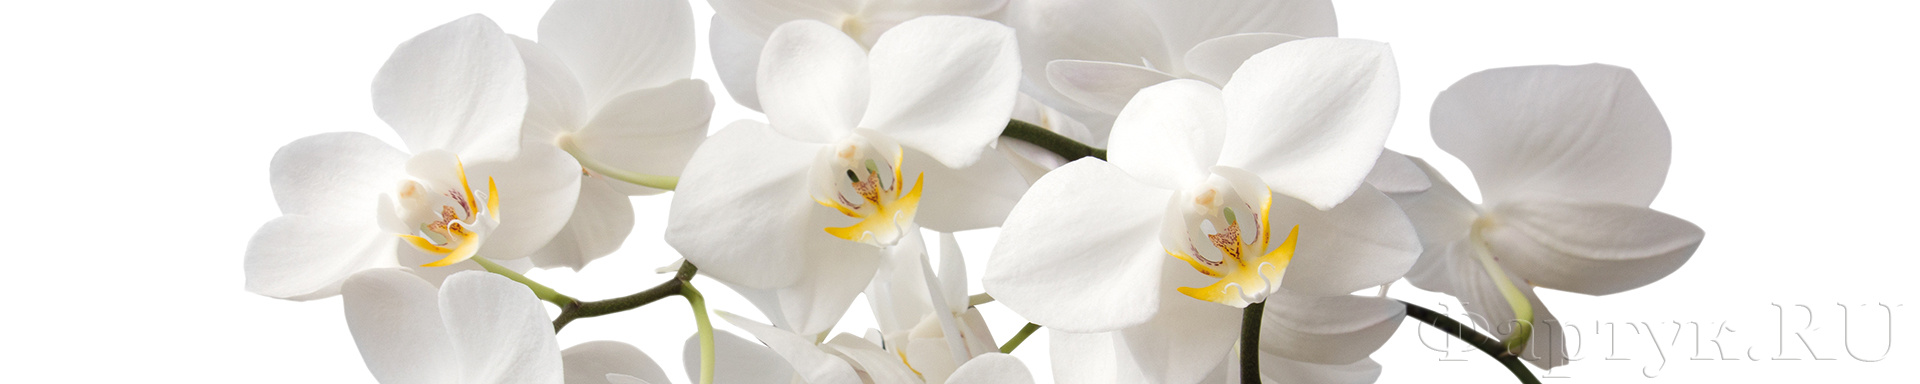 Крупные белые орхидеи